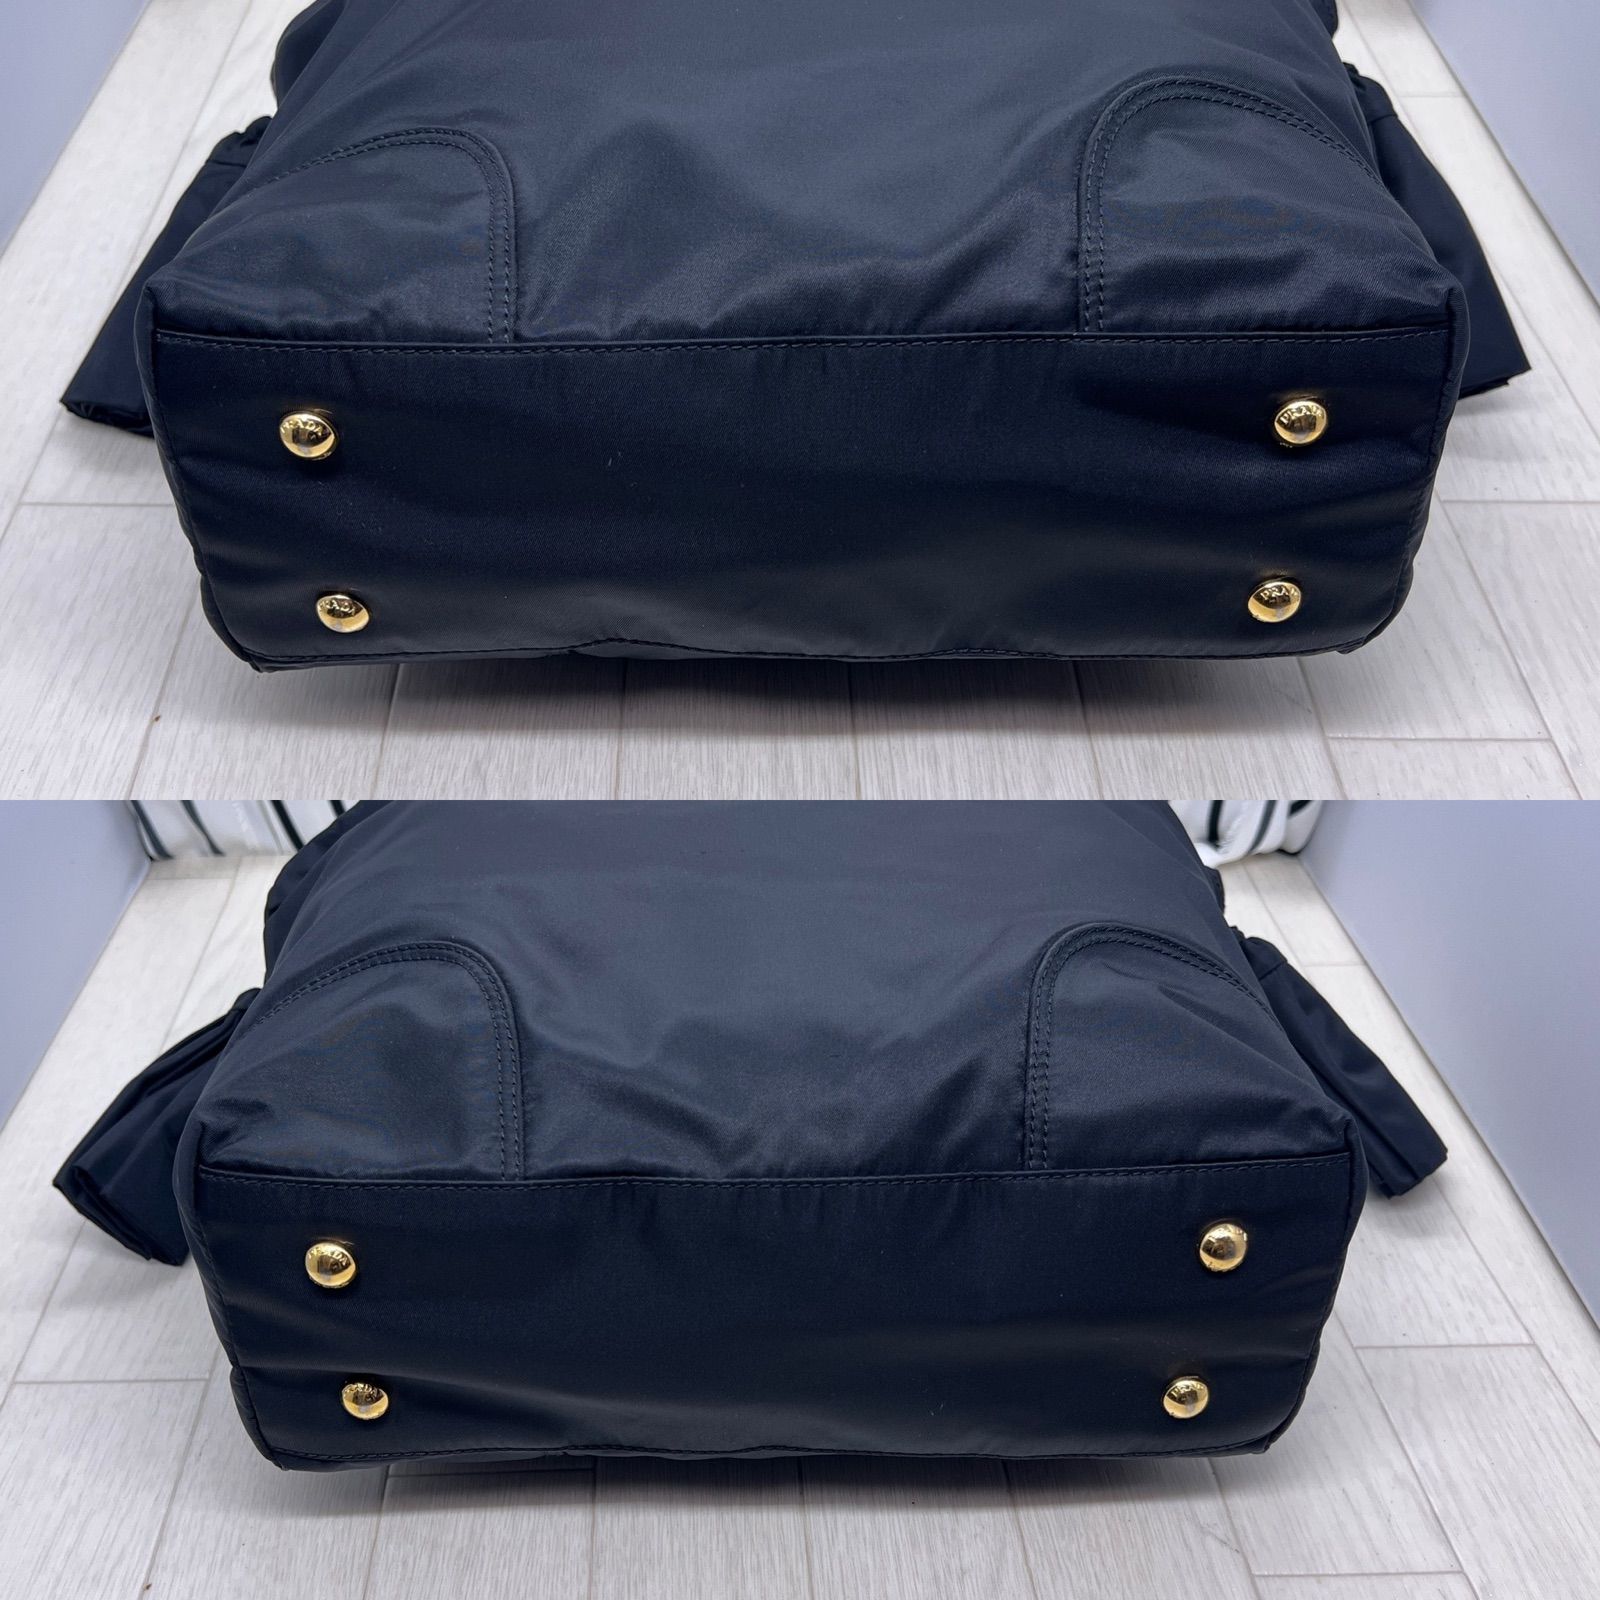 期間限定特売 【美品】PRADA×プラダ A4収納可能金色プレートトートバッグ トートバッグ